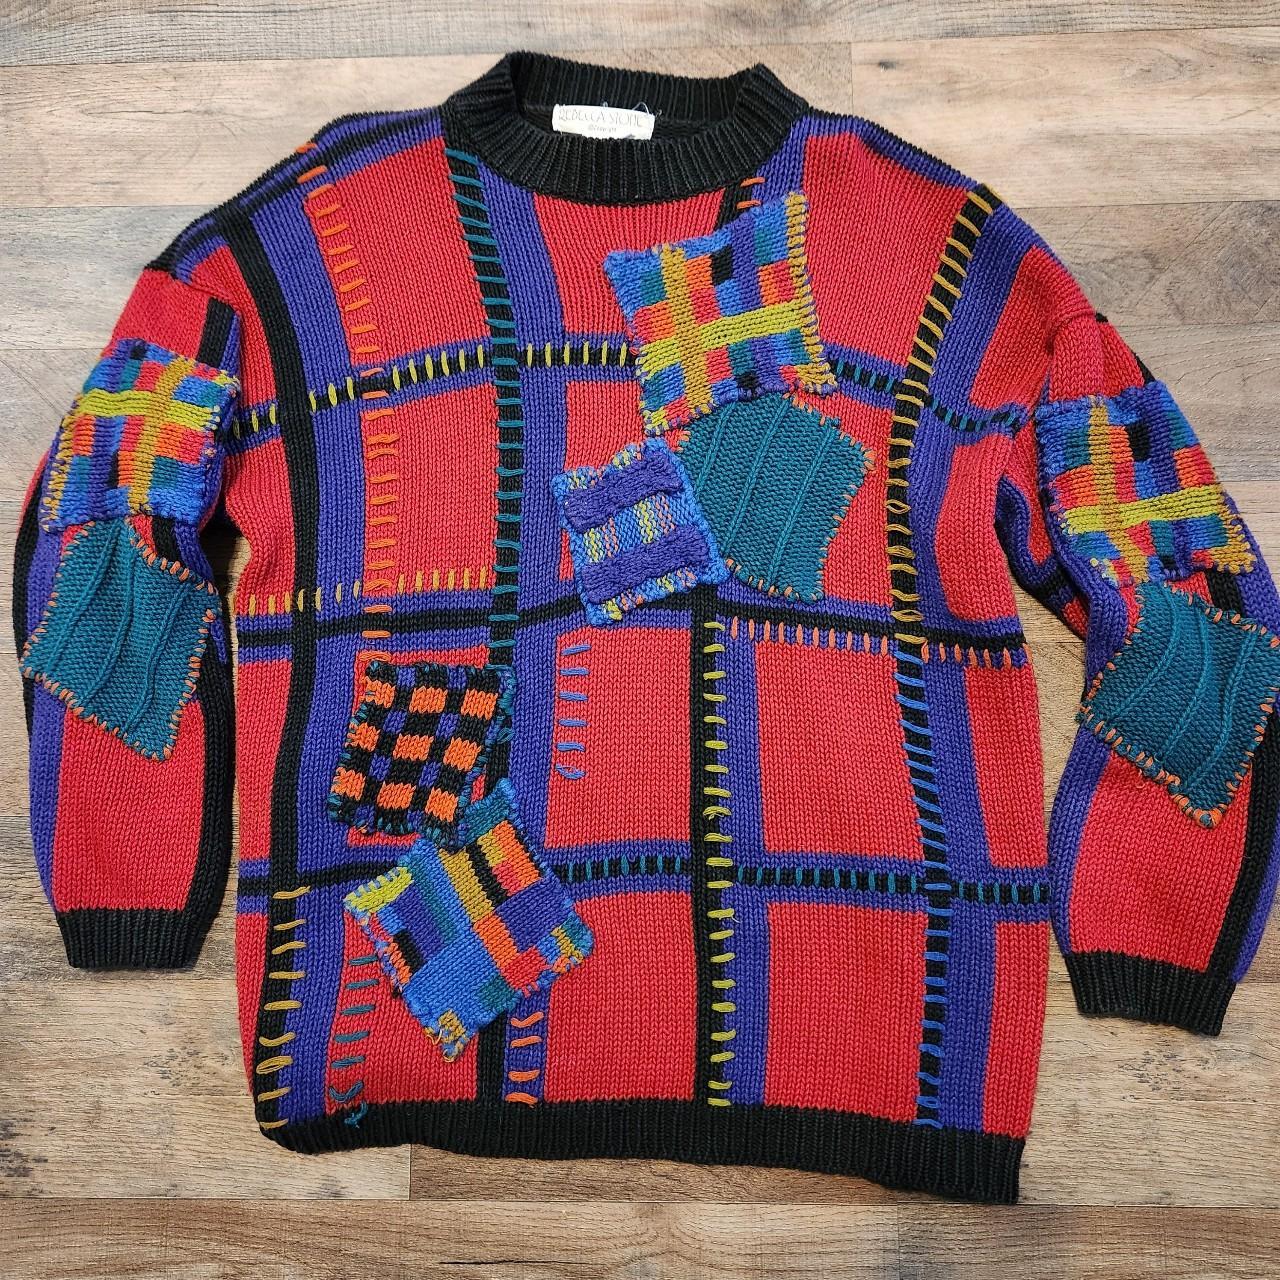 🗣Rebecca Stone Sweater Vintage 80s oversized knit... - Depop